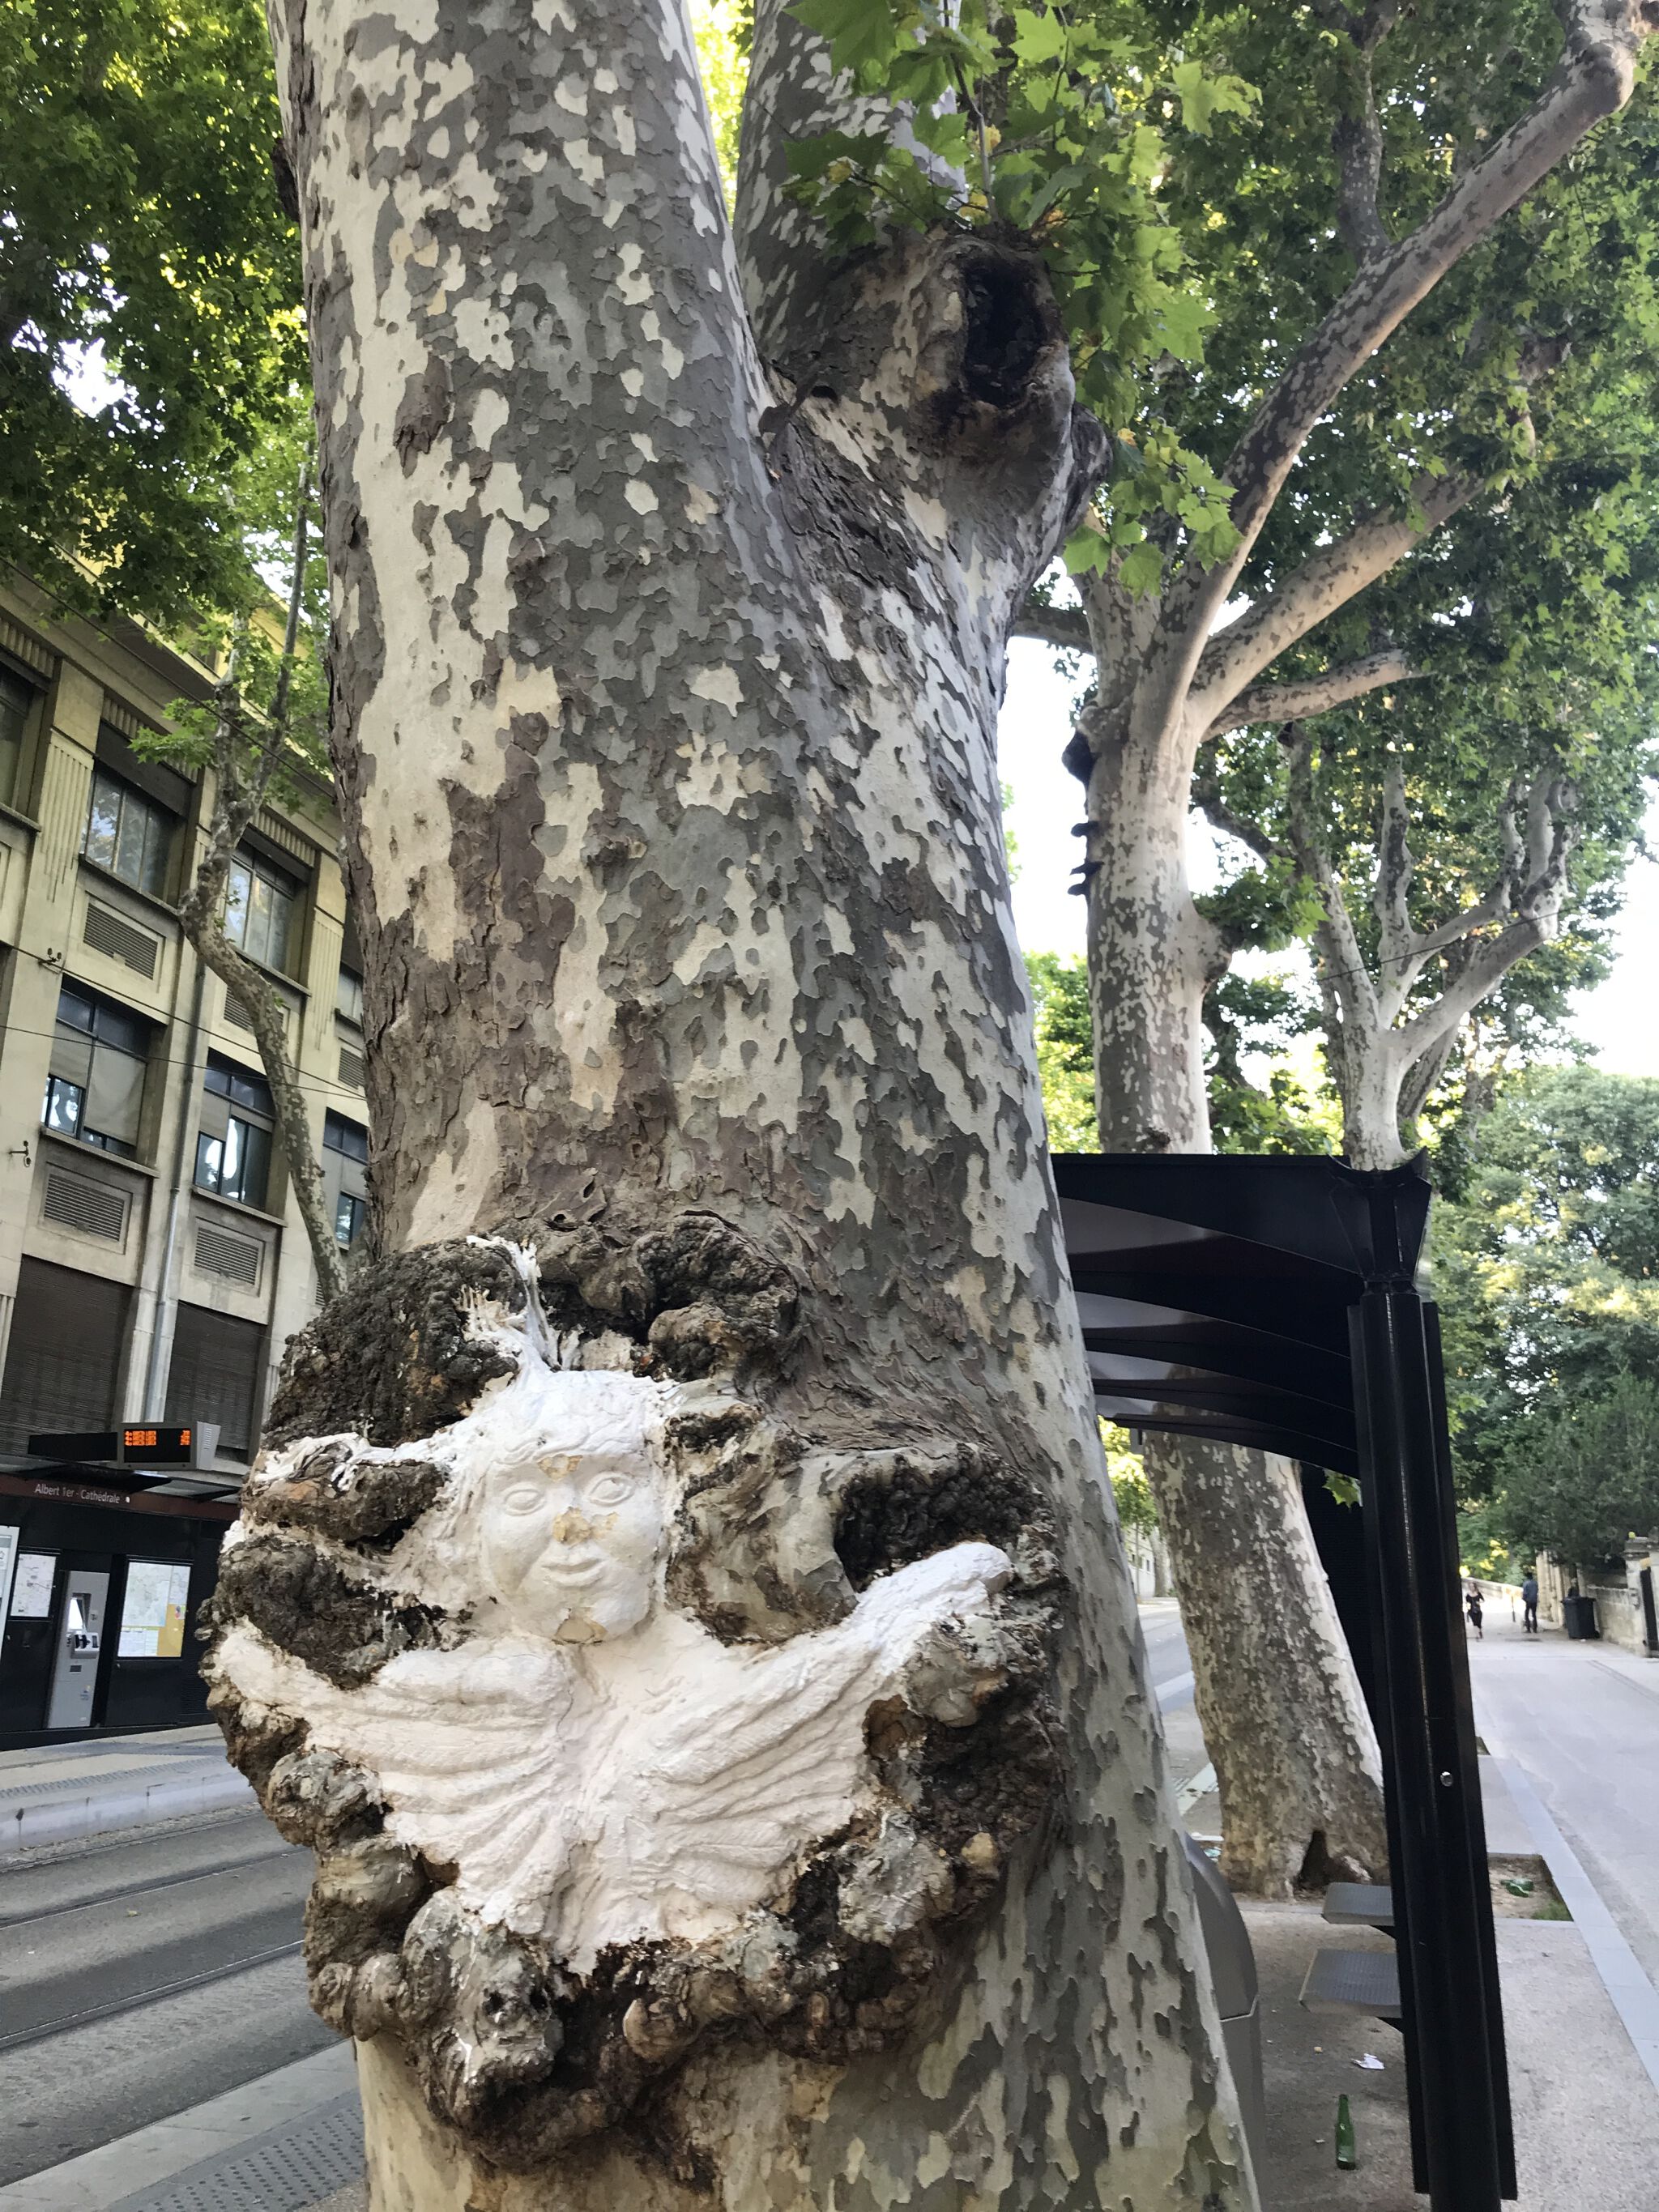 Unknown - Montpellier&mdash;Plaster on Trees